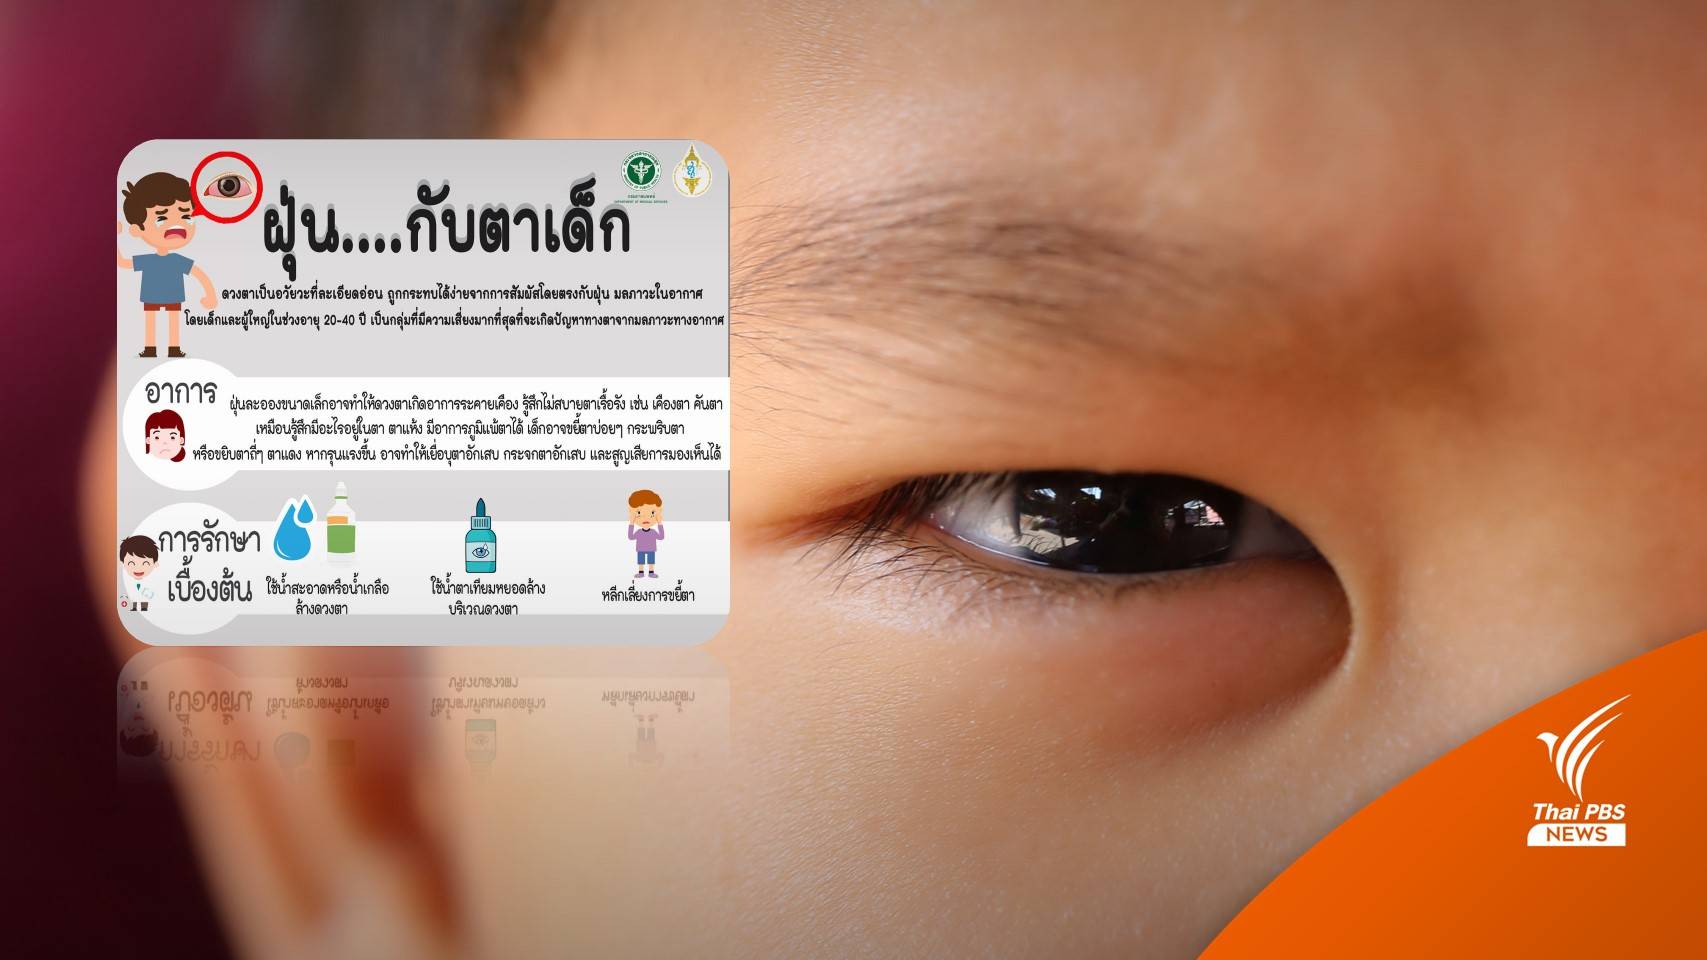 ฝุ่น PM 2.5 อันตรายต่อดวงตาของเด็ก แพทย์แนะข้อควรปฎิบัติ 